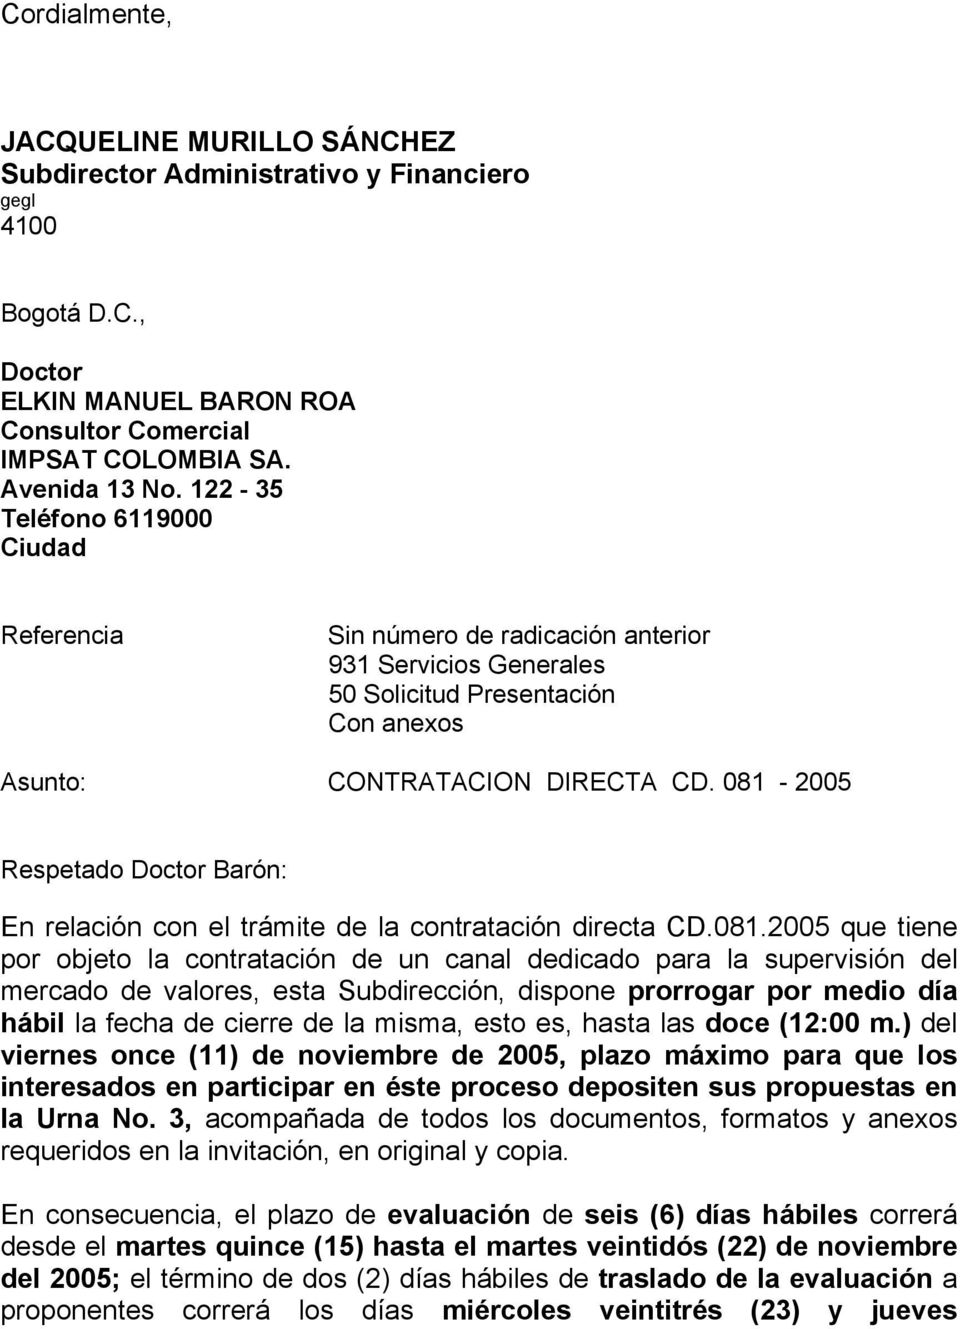 081-2005 Respetado Doctor Barón: En relación con el trámite de la contratación directa CD.081.2005 que tiene por objeto la contratación de un canal dedicado para la supervisión del mercado de